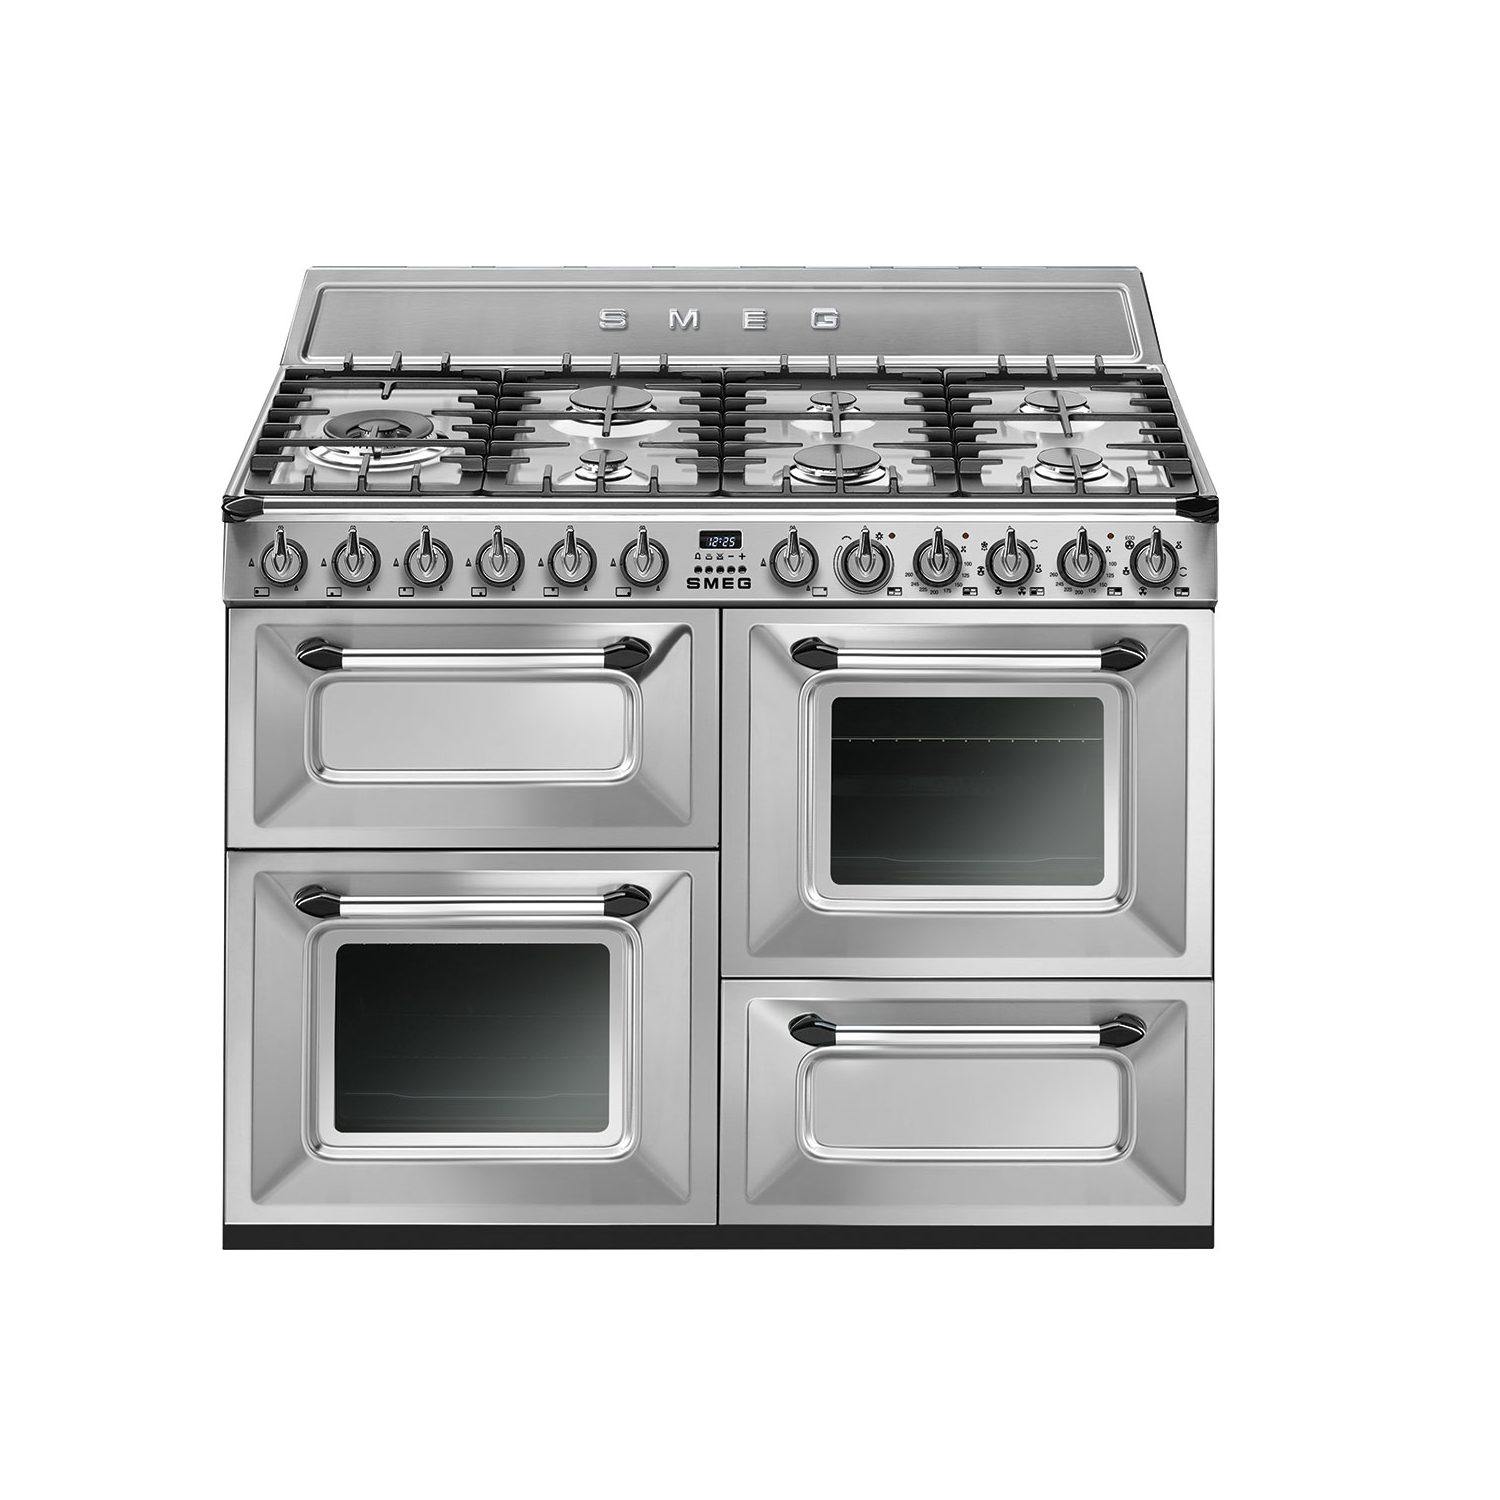 Cucina SMEG Victoria - Blocco cottura, Brand_Smeg - Elettrodomestici a libera installazione - Smeg